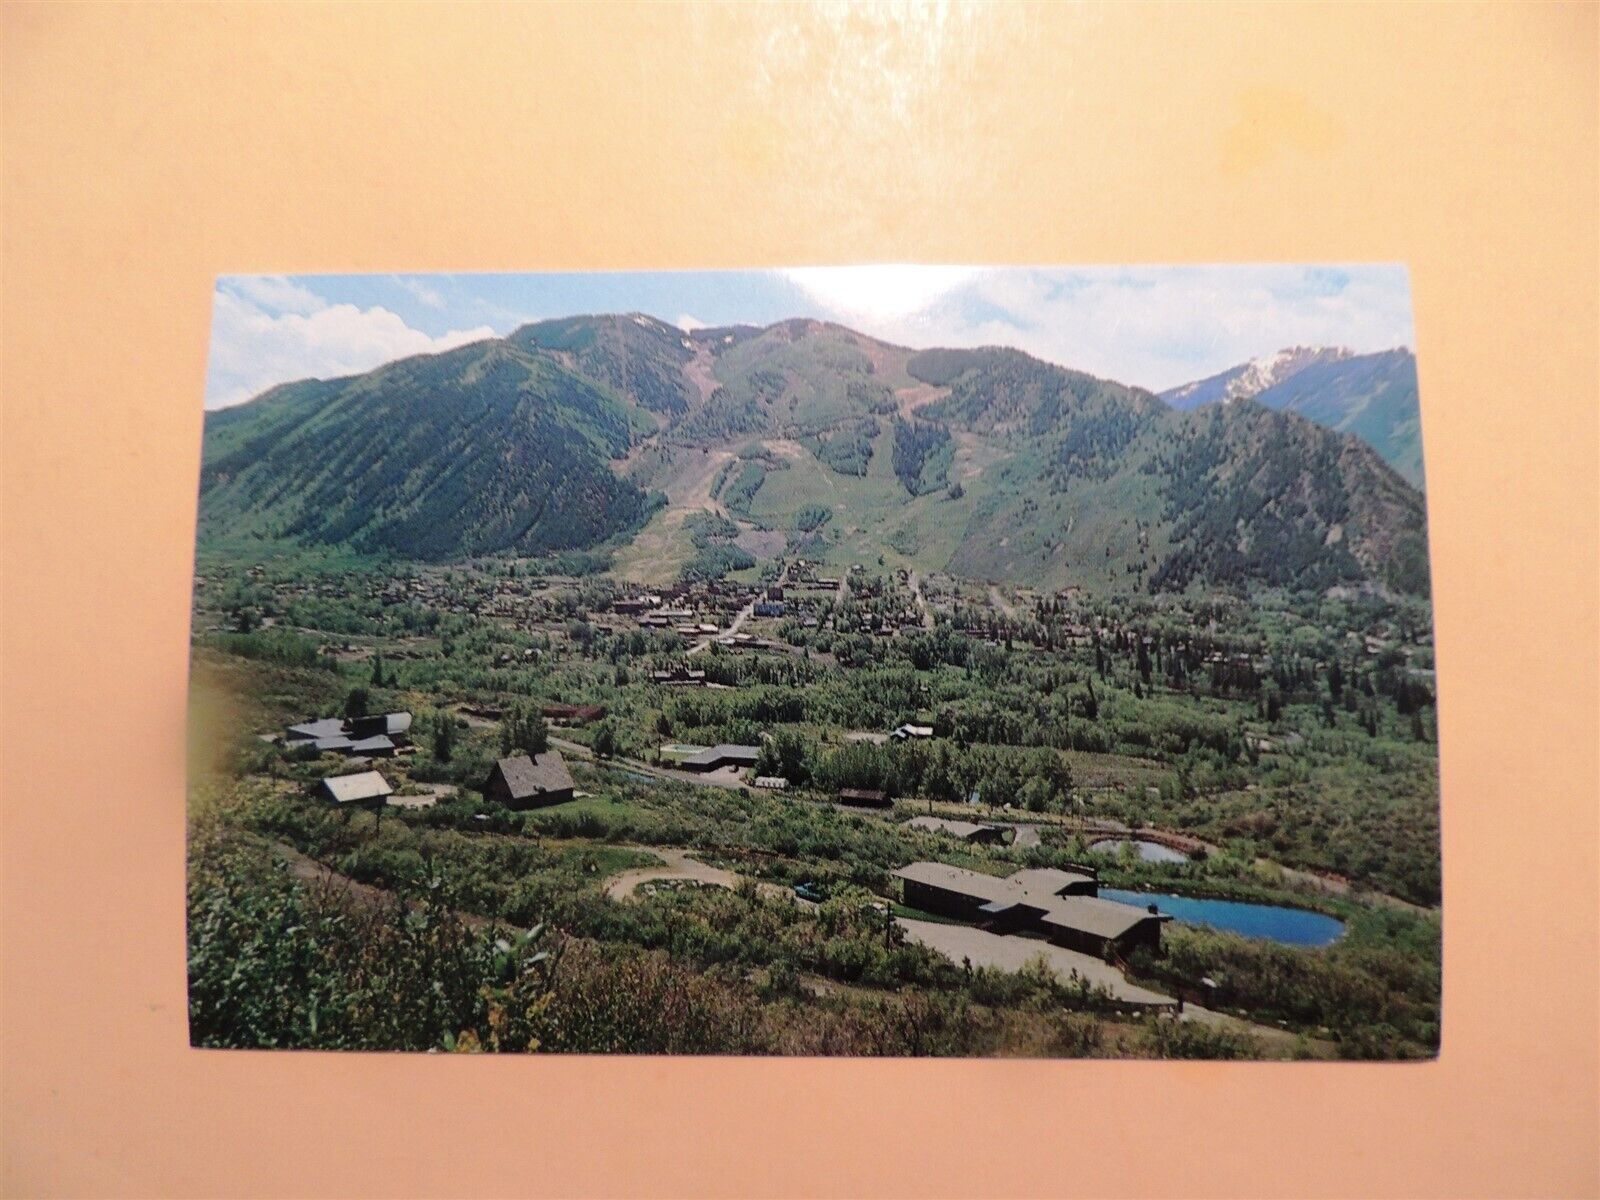 Aspen Colorado & Aspen Mountain vintage postcard aerial view 